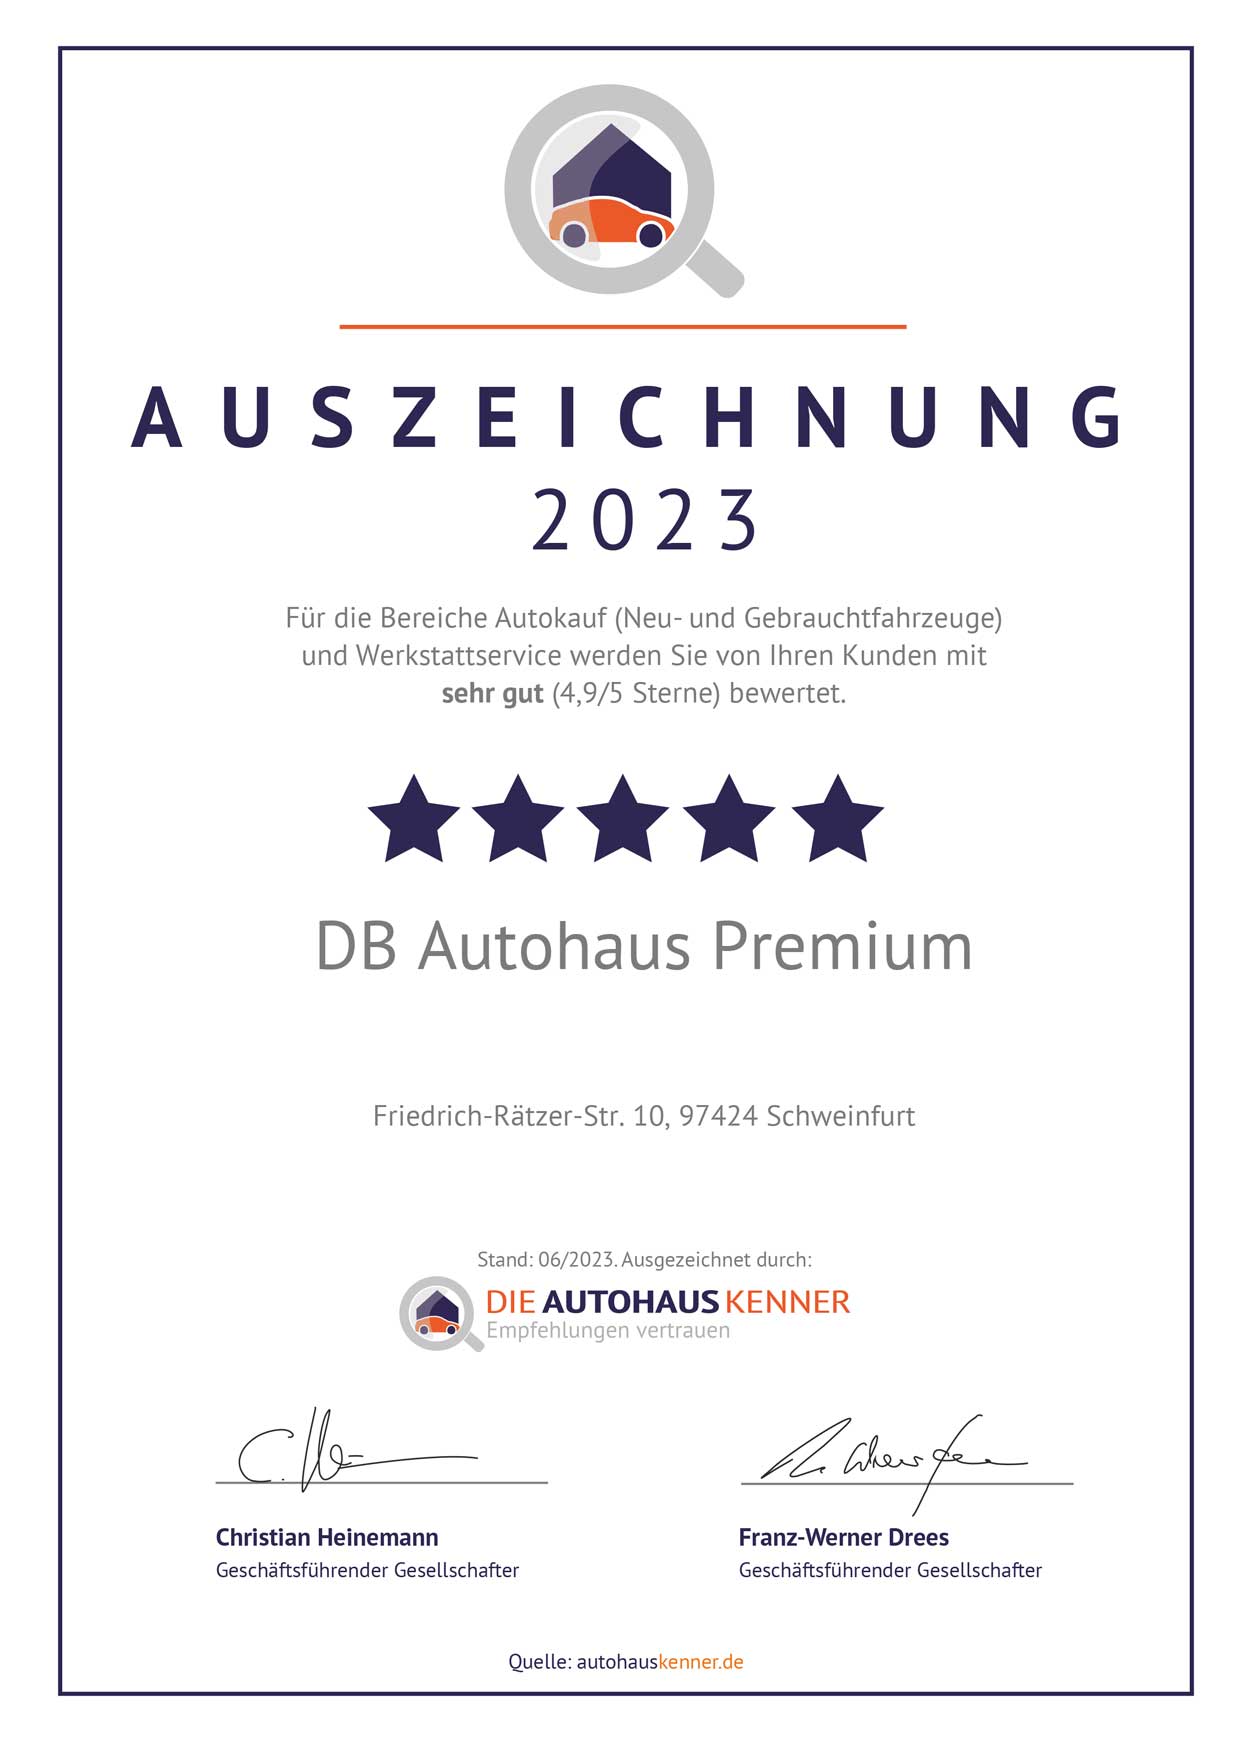 Auszeichnung von Autohauskenner für DB Autohaus Premium Schweinfurt 2023